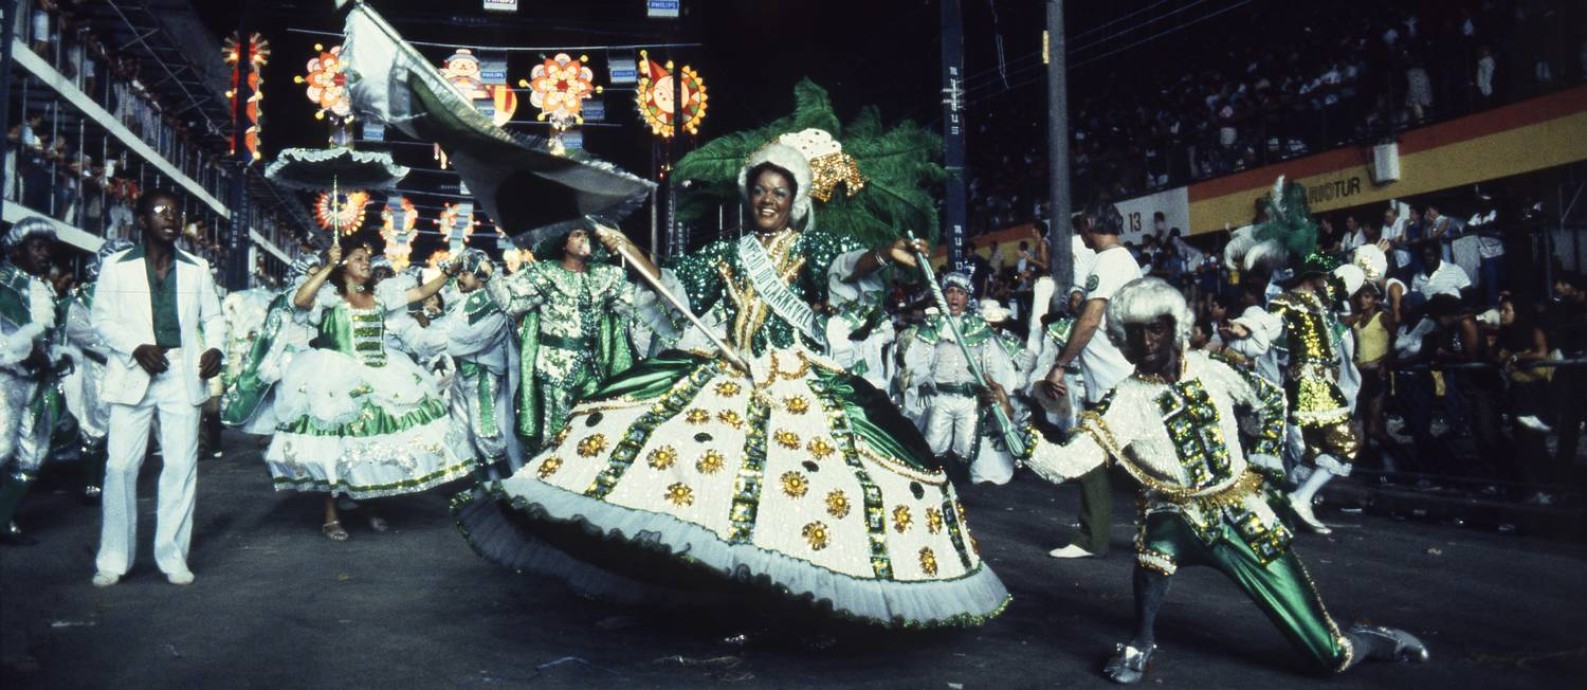 Rio de Janeiro (RJ) - 28/02/1982 - Carnaval - RJ - Escola de Samba - Império Serrano - Desfile das Campeãs - Foto Luiz Pinto / Agência O Globo - Cromo : 82-0309-S